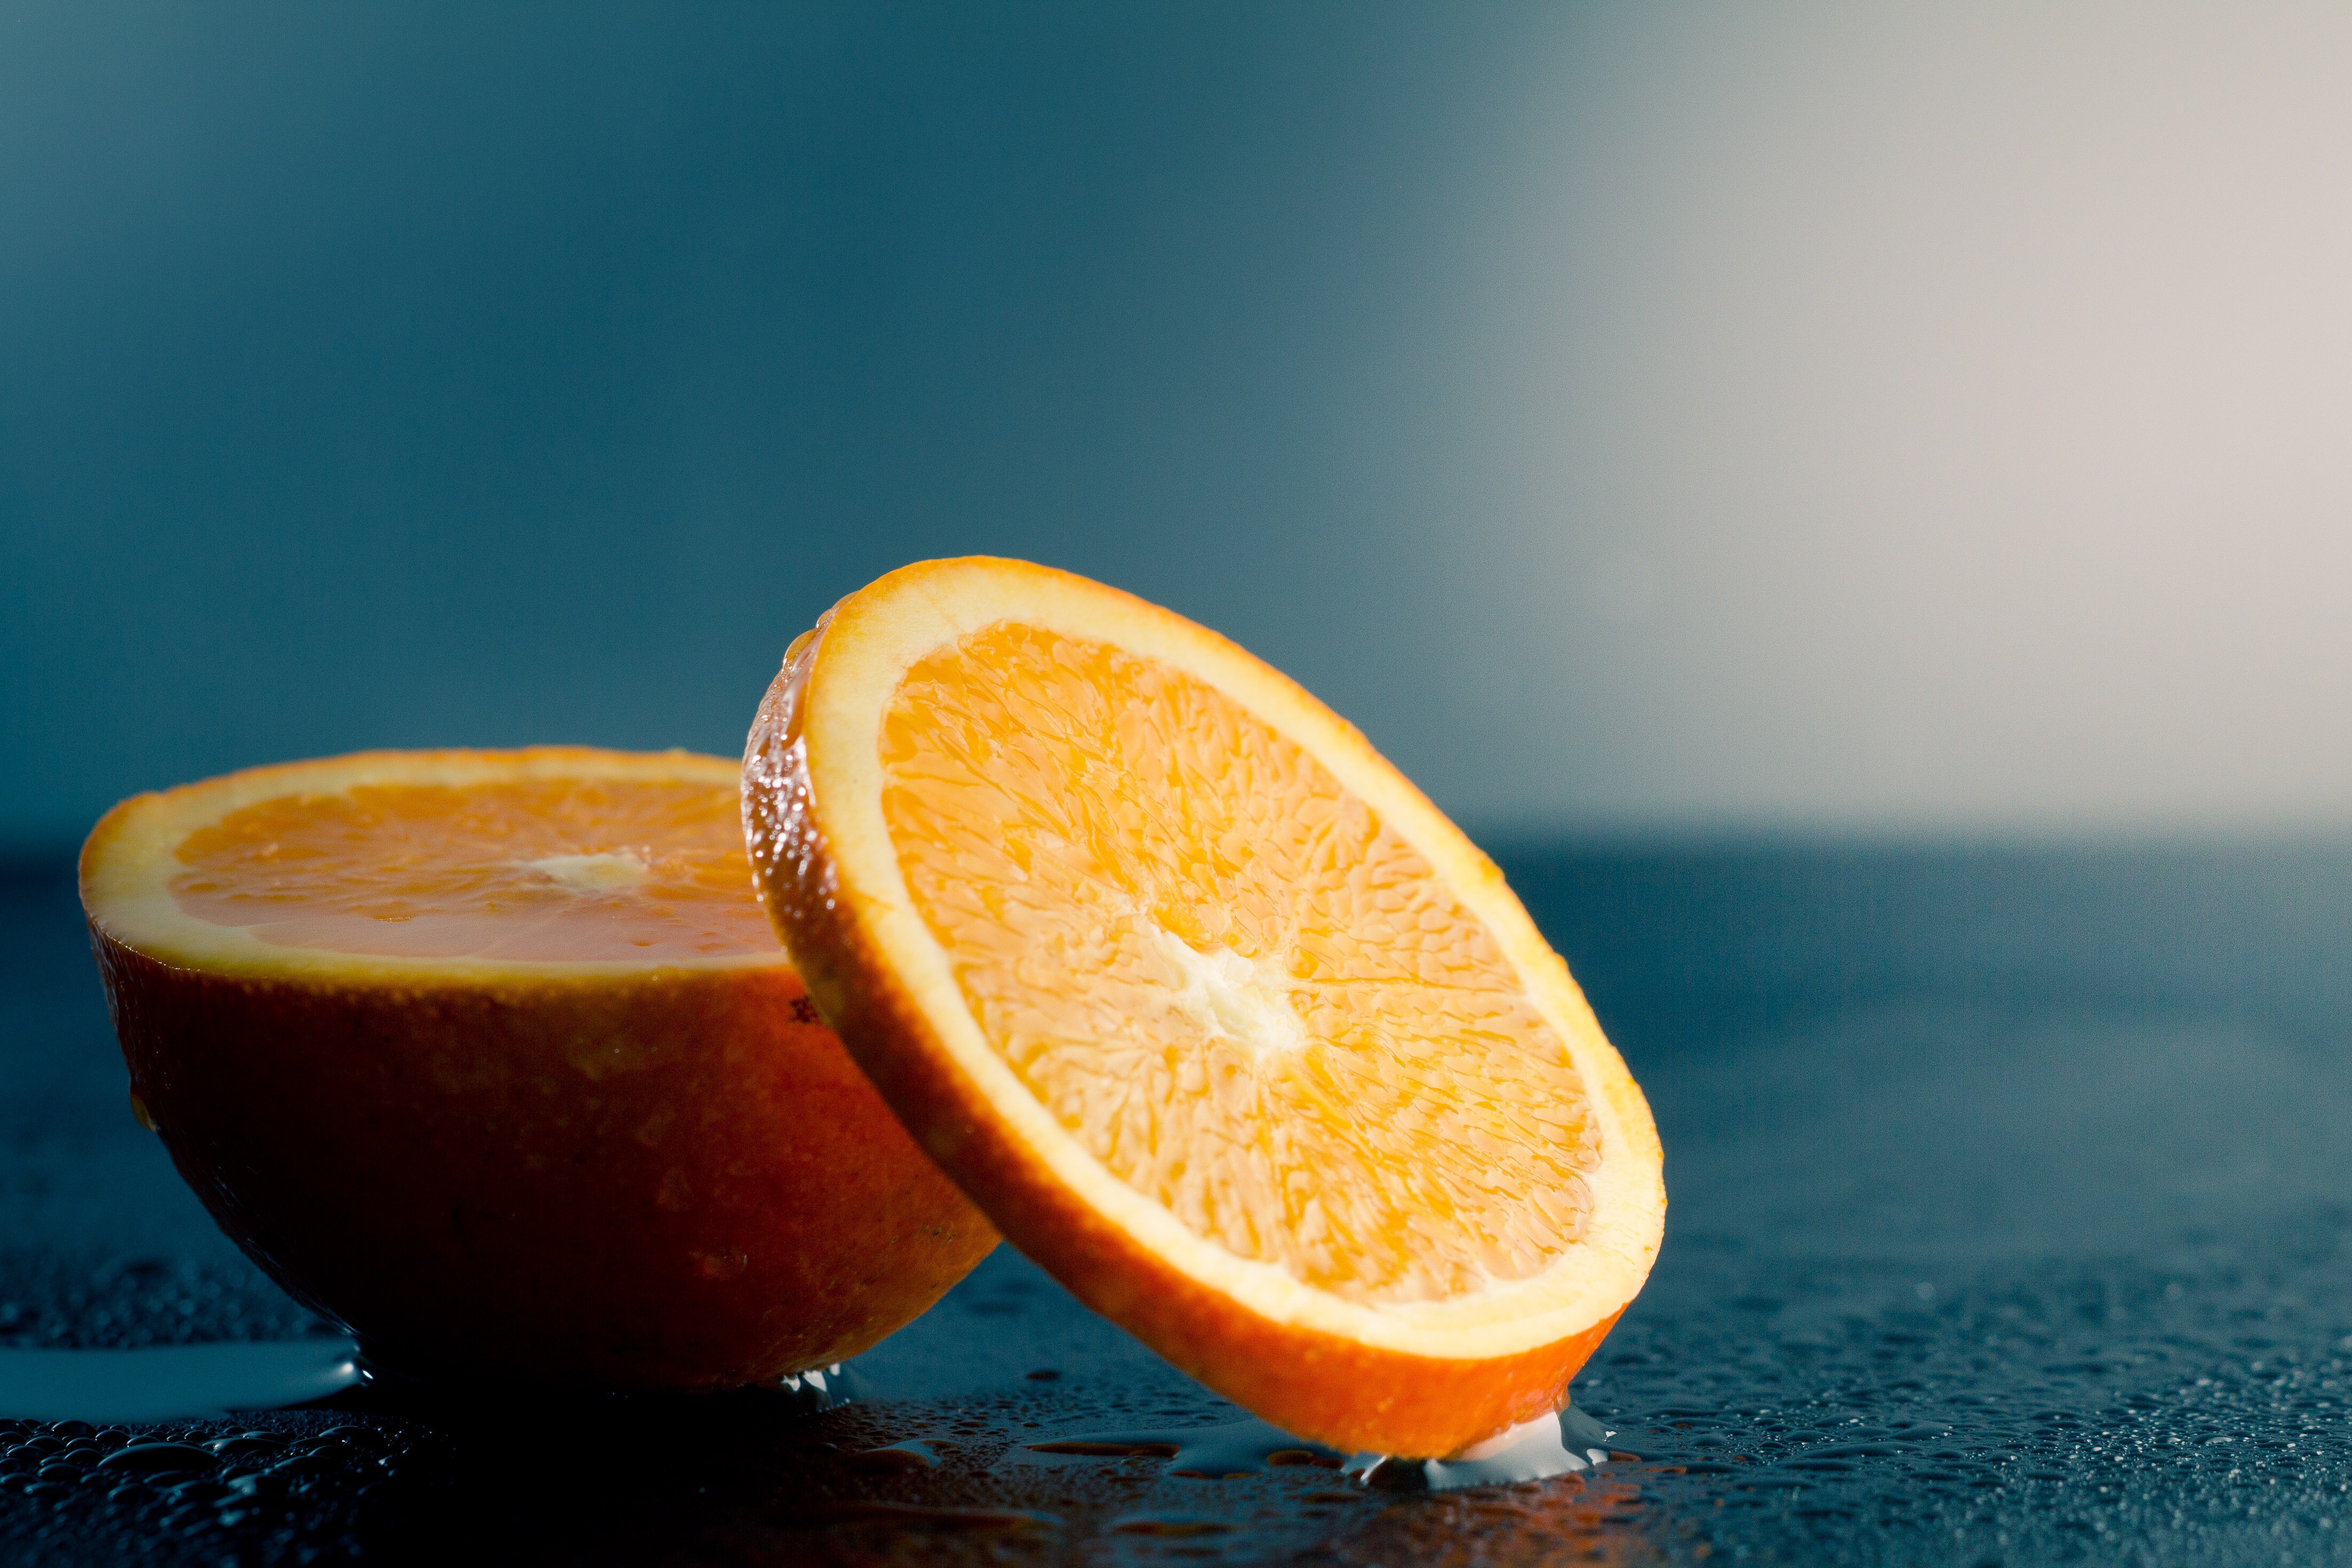 Обои на стол разные. Апельсин Навелин. Цитрус апельсин. Разрезанный апельсин. Сочный апельсин.